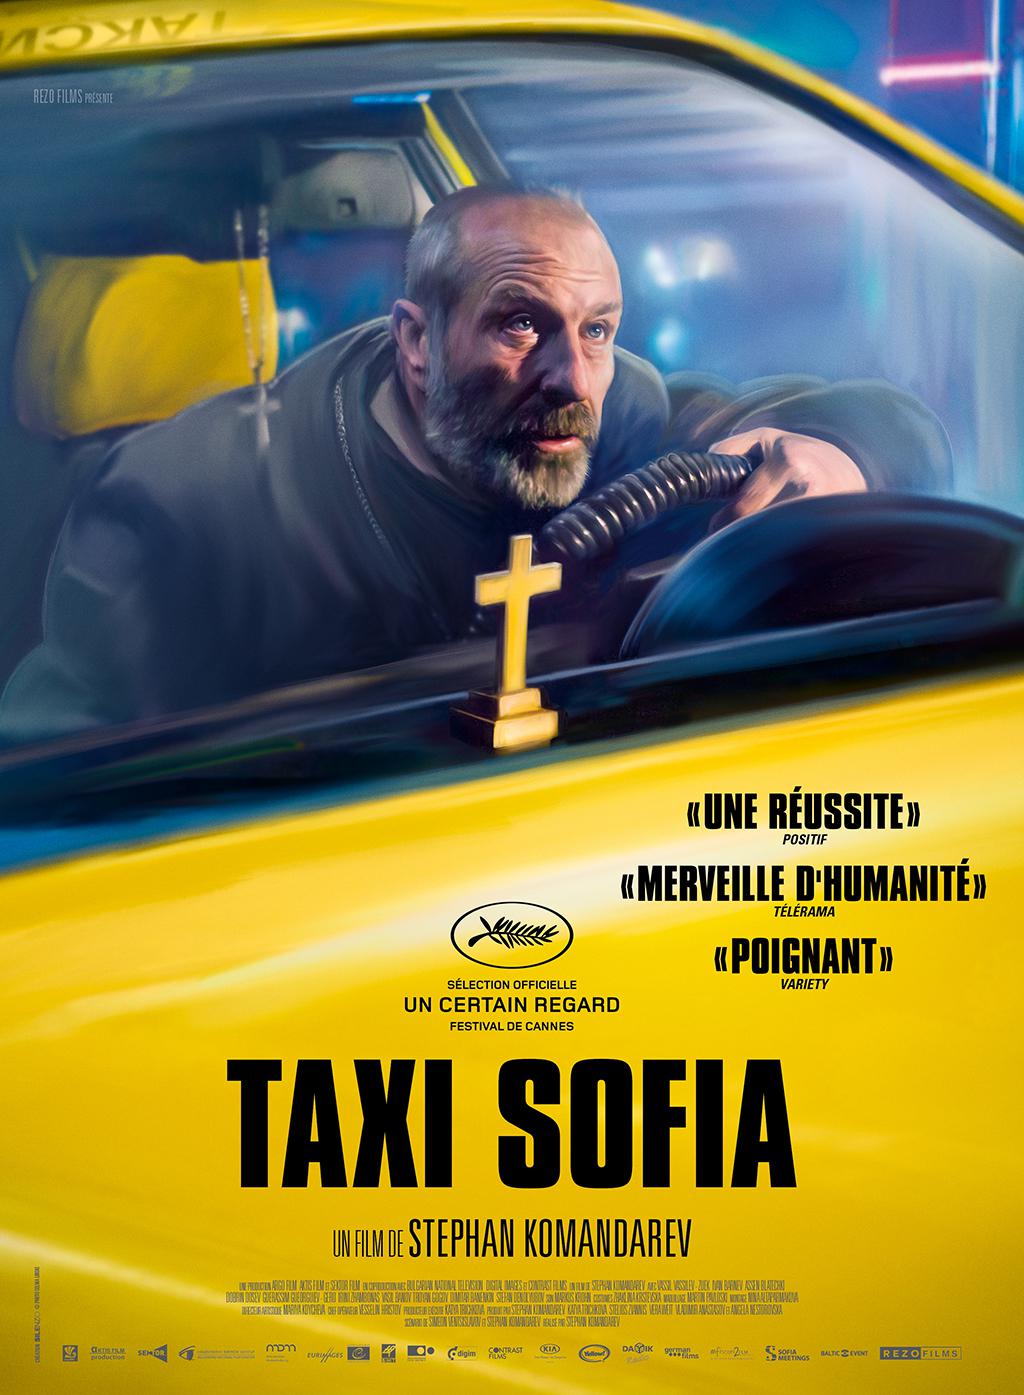 Sofya Taksi